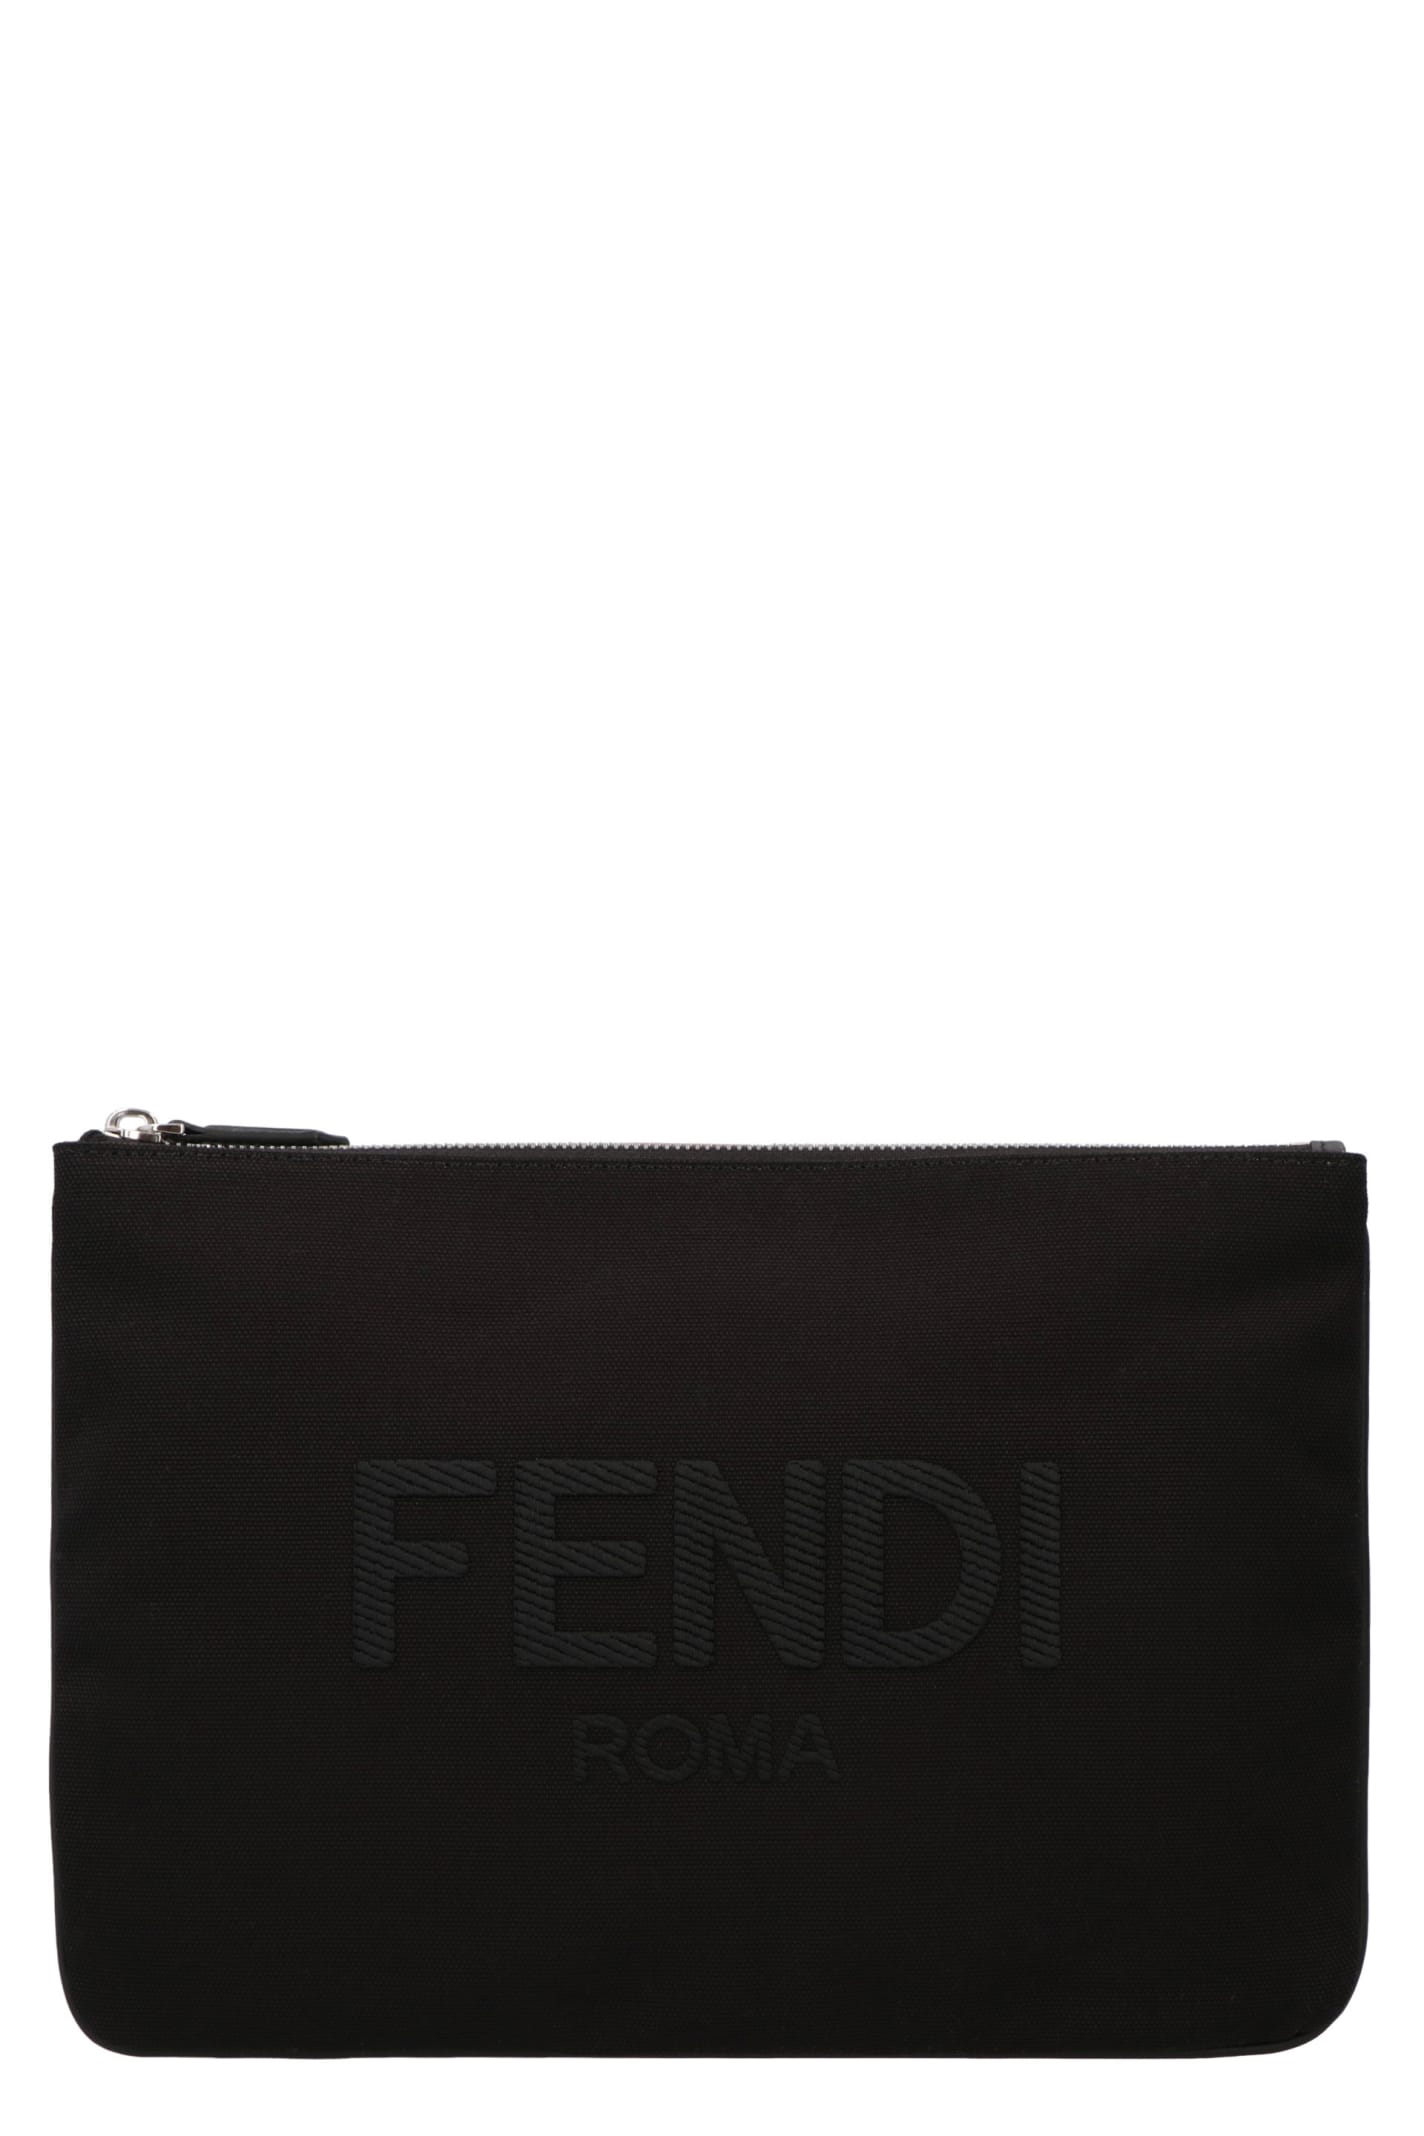 Fendi Logo Print Flat Pouch